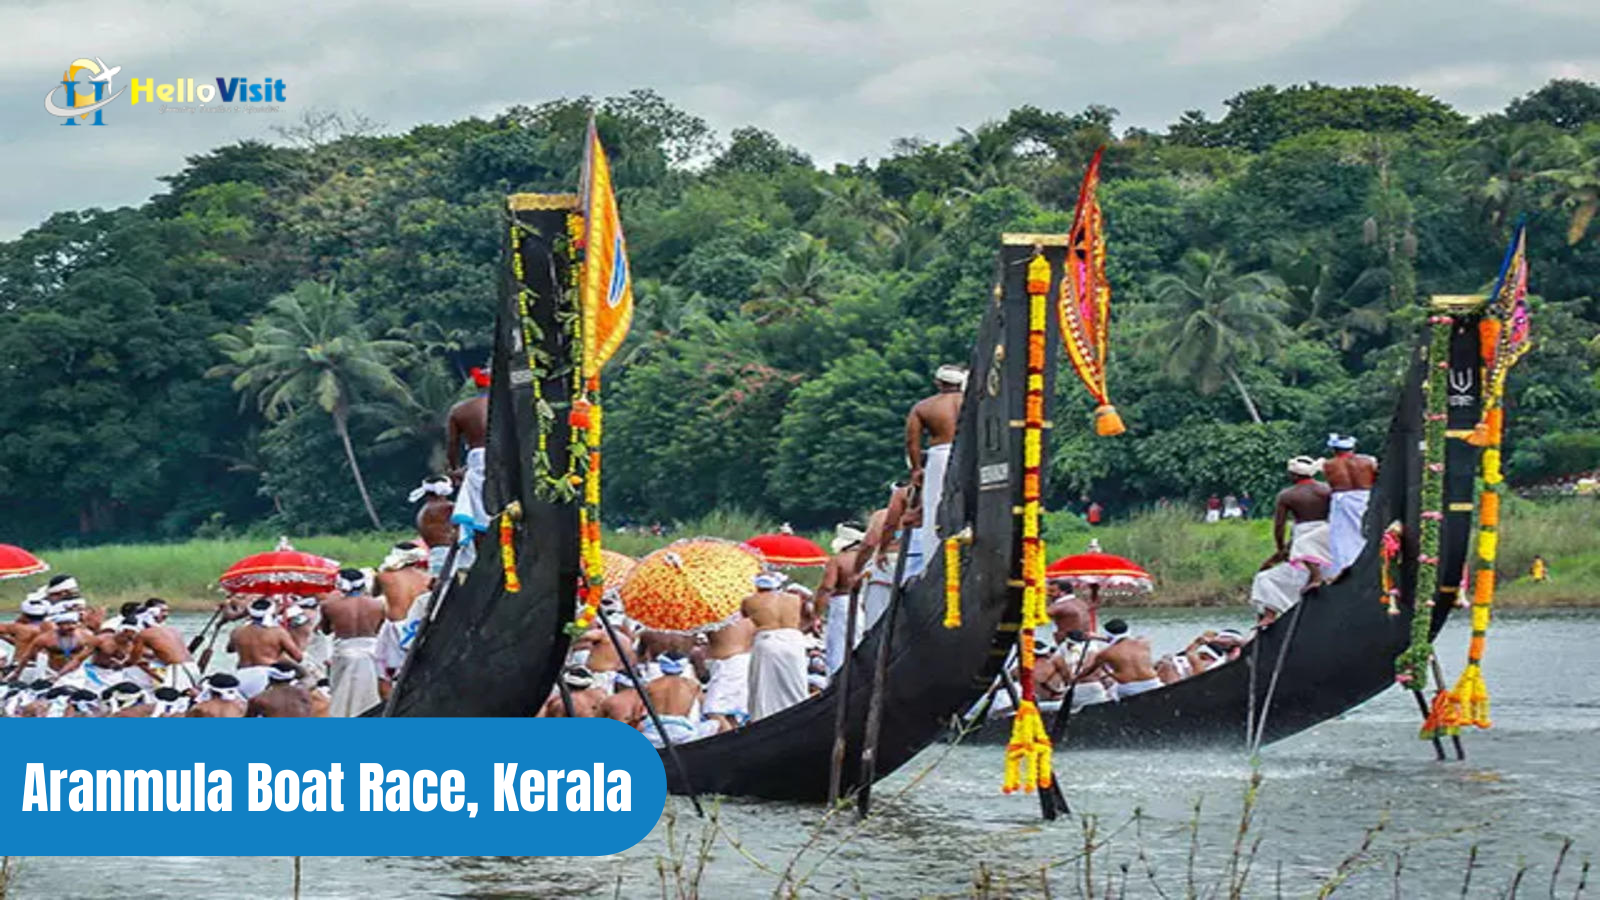 Aranmula Boat Race, Kerala